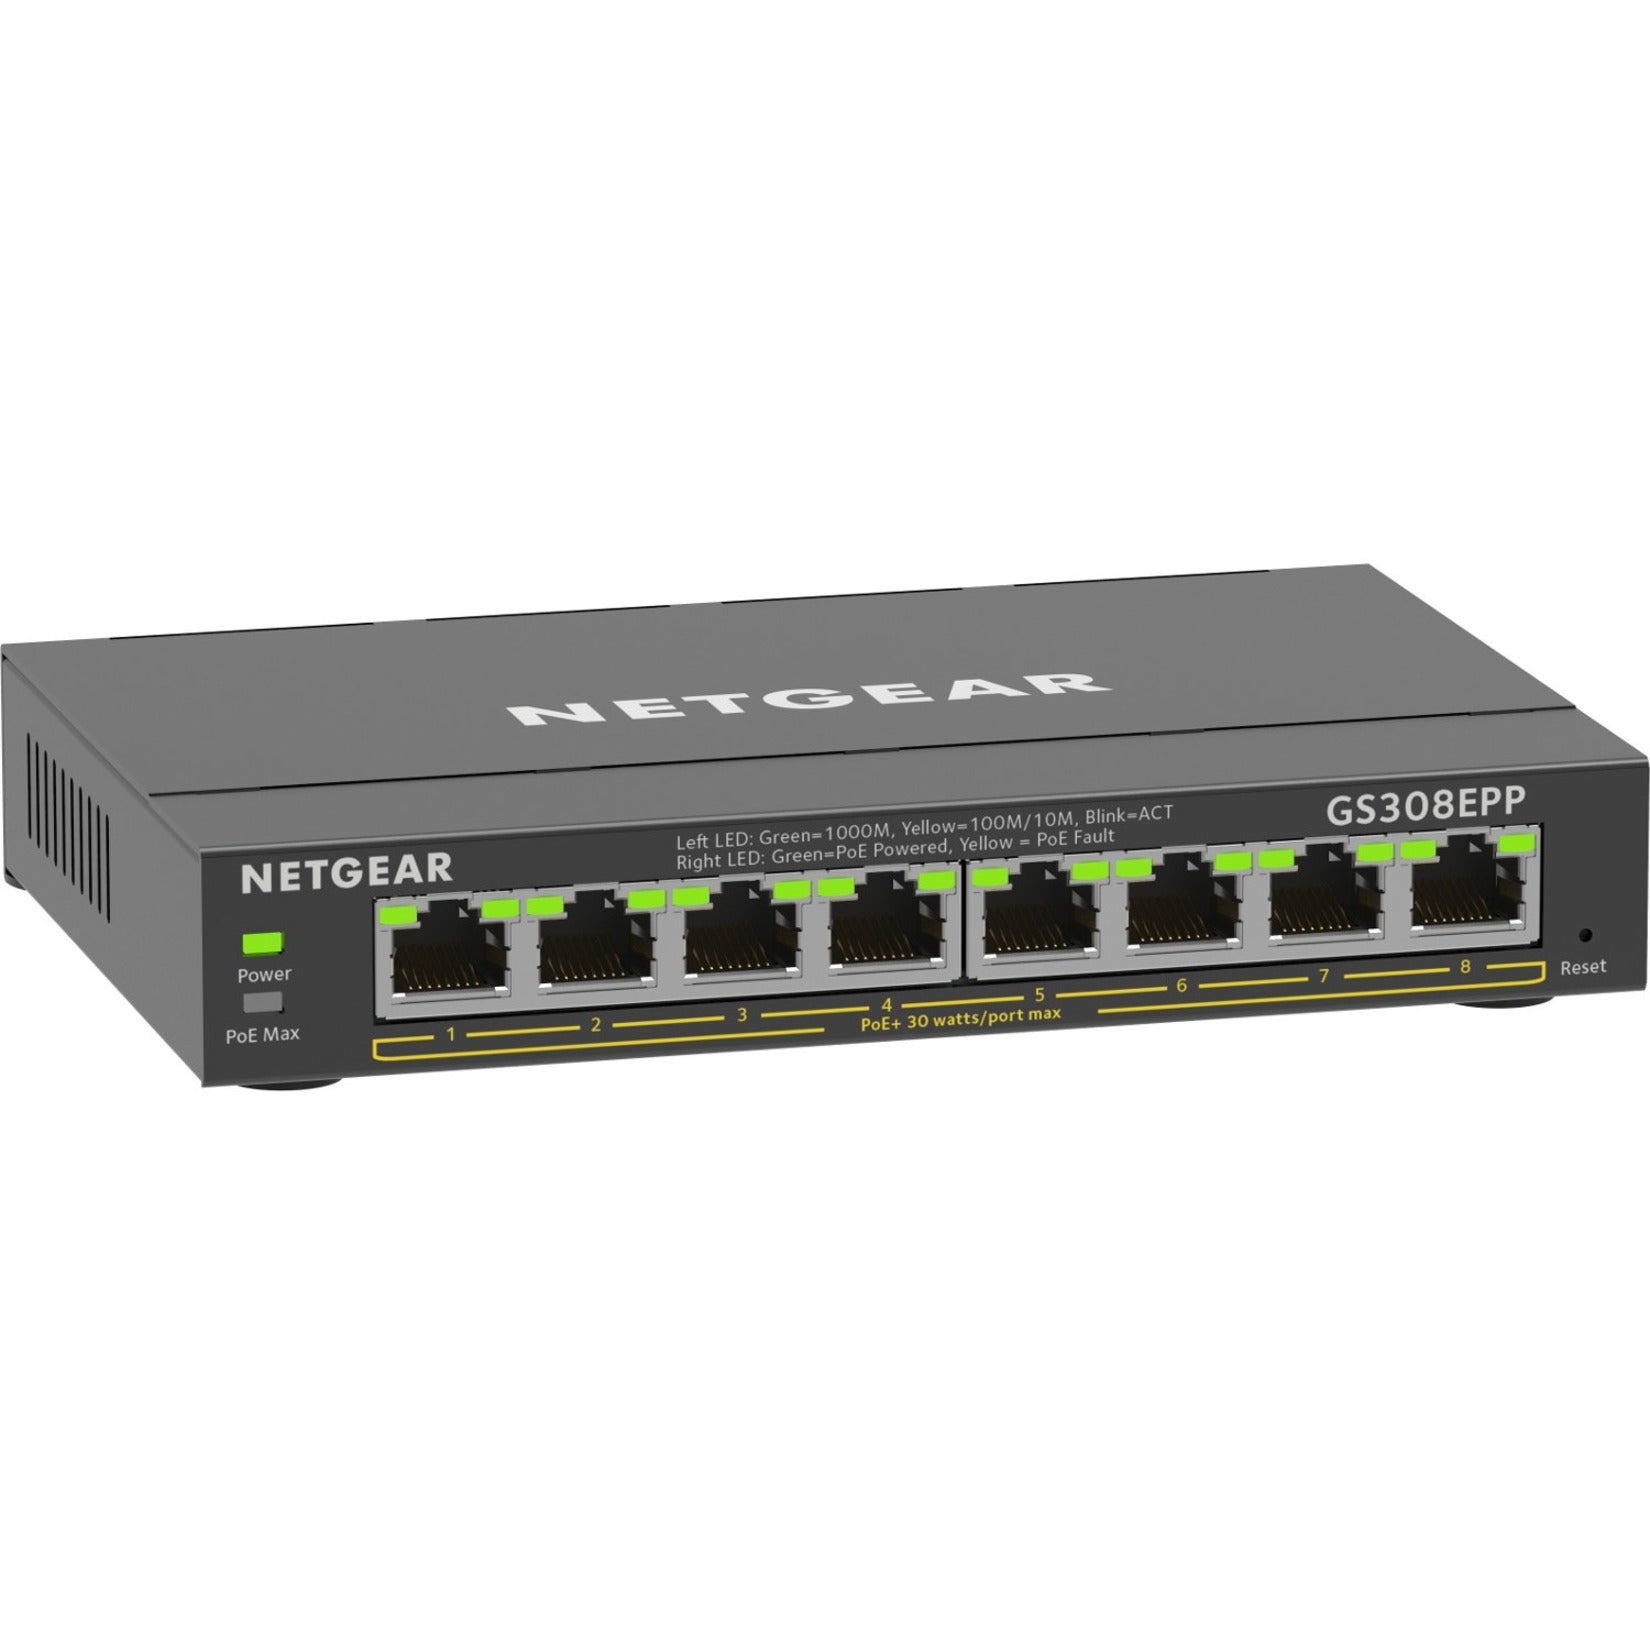 Switch de gestión inteligente Plus Netgear GS308EPP-100NAS de 8 puertos Gigabit Ethernet PoE+ presupuesto de PoE de 123W garantía de 5 años